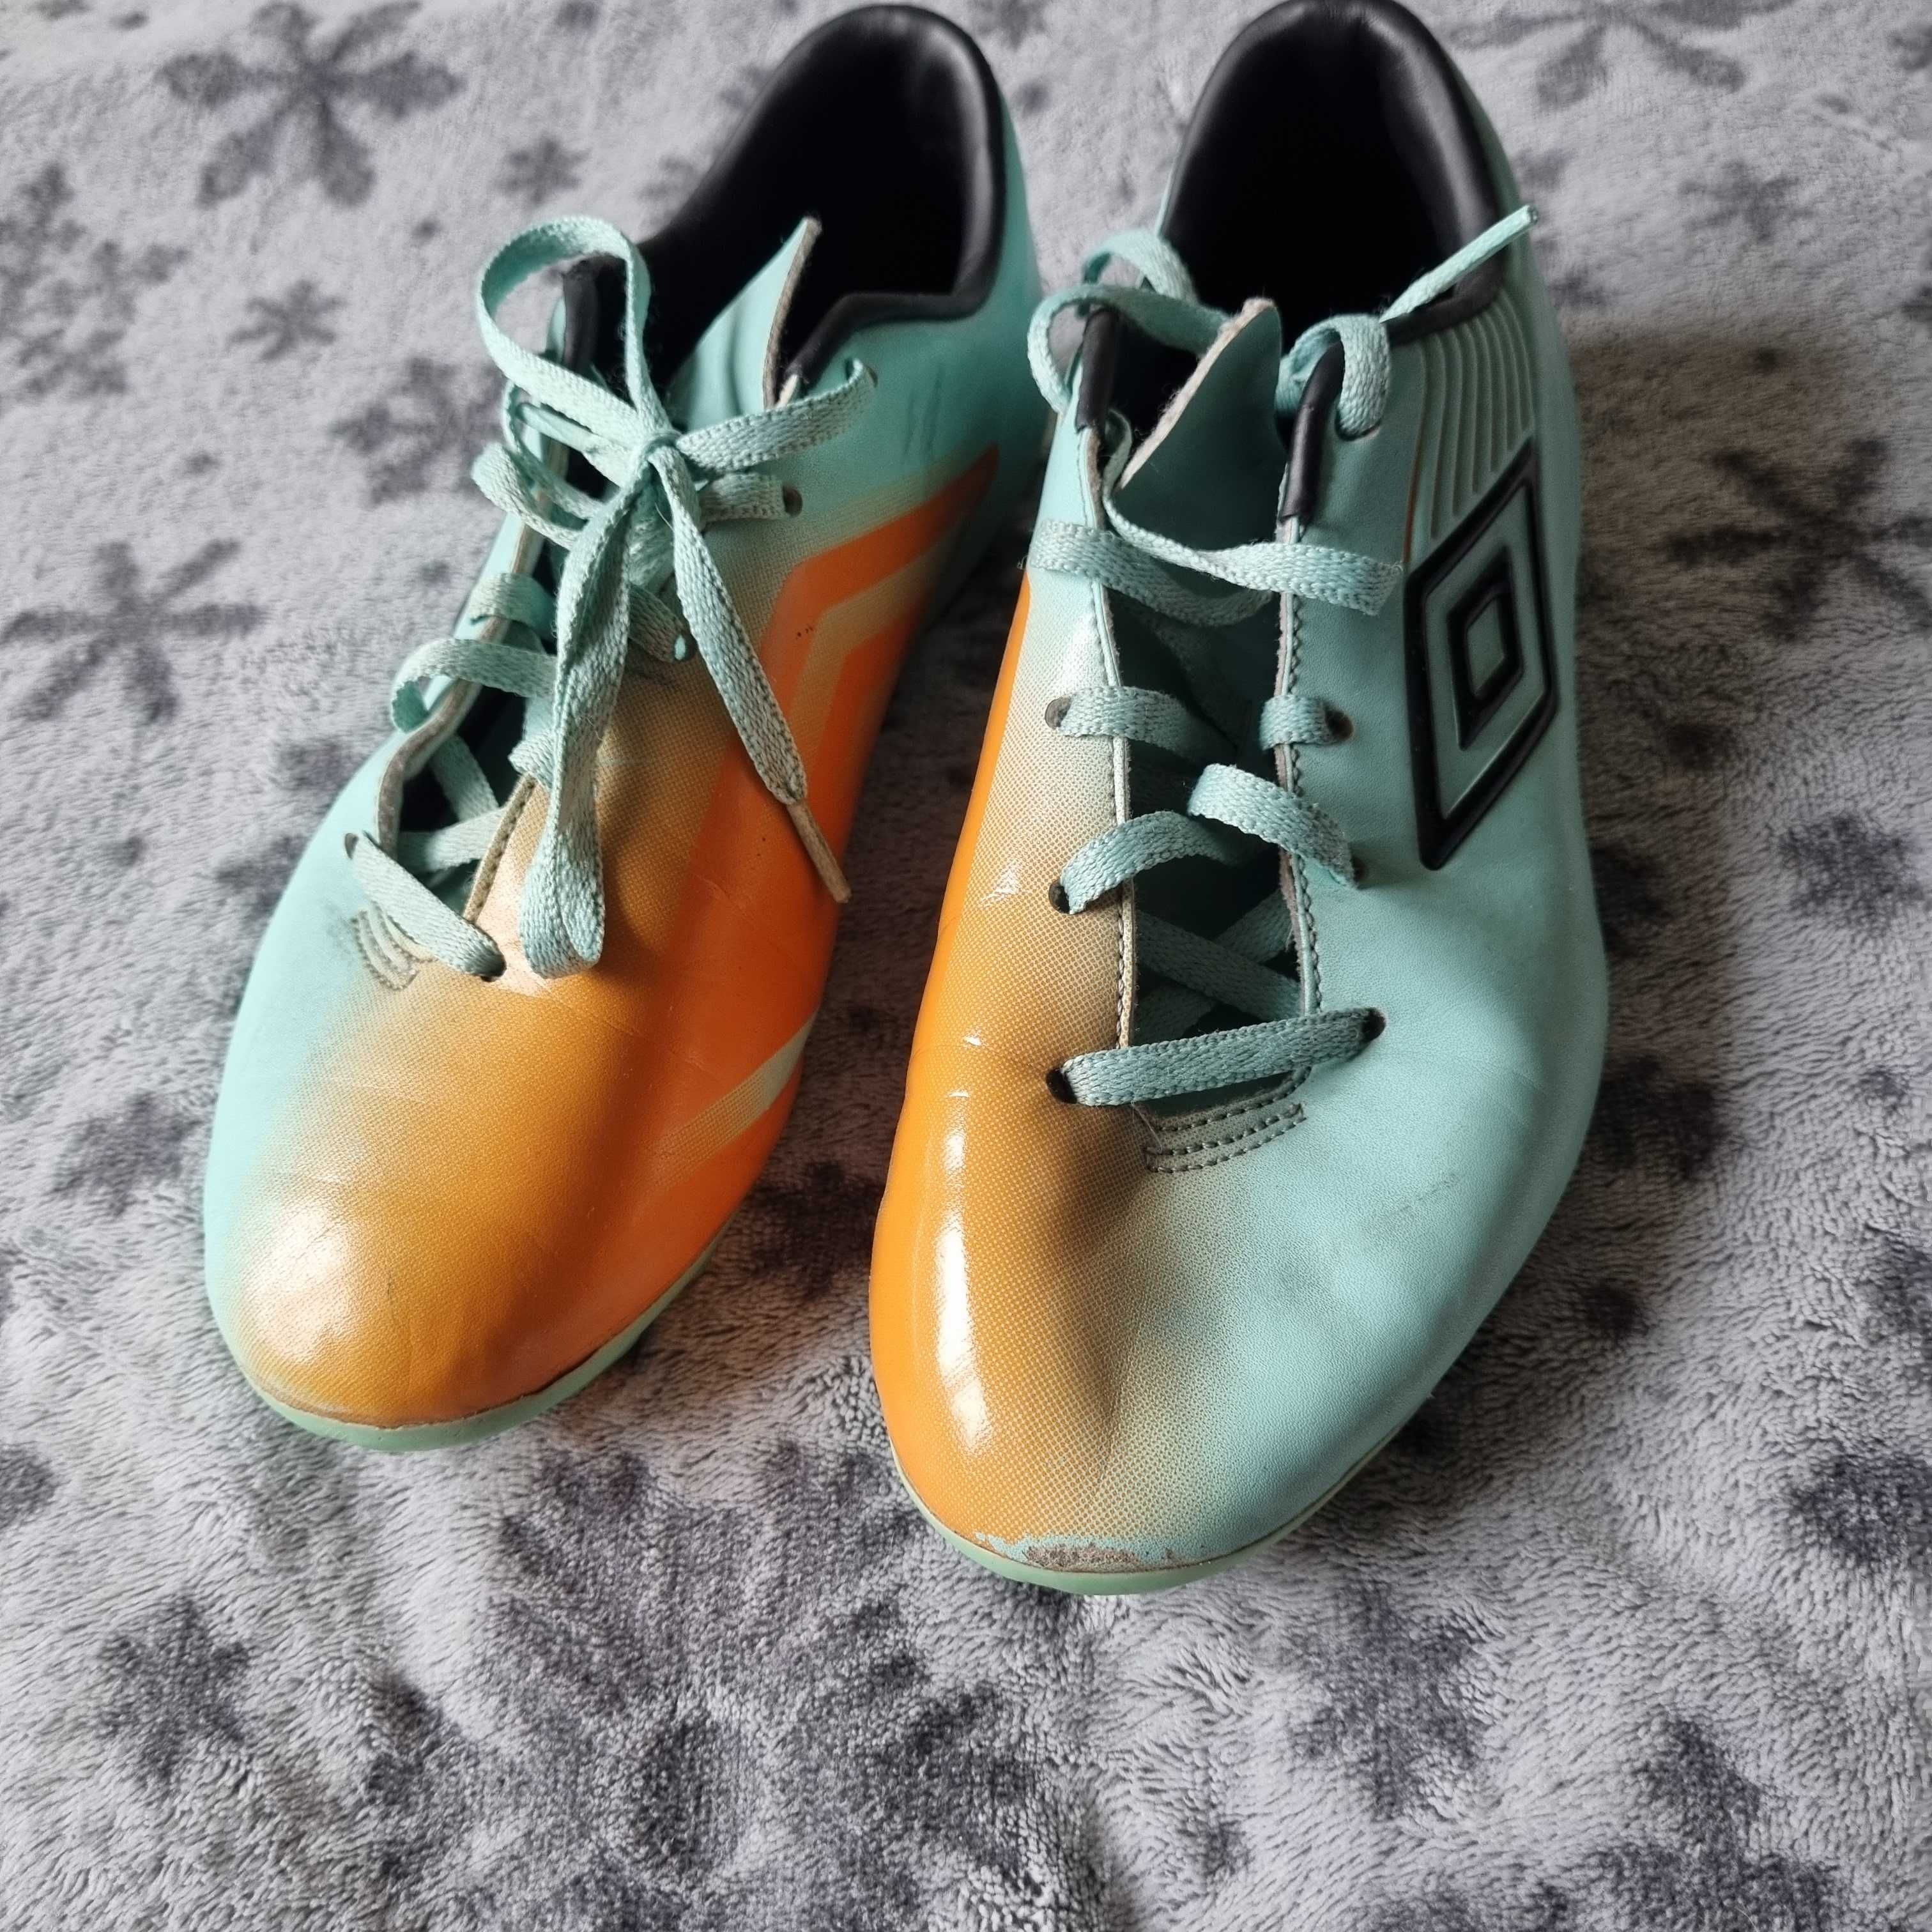 buty piłkarskie, korki, umbro r. 37,5